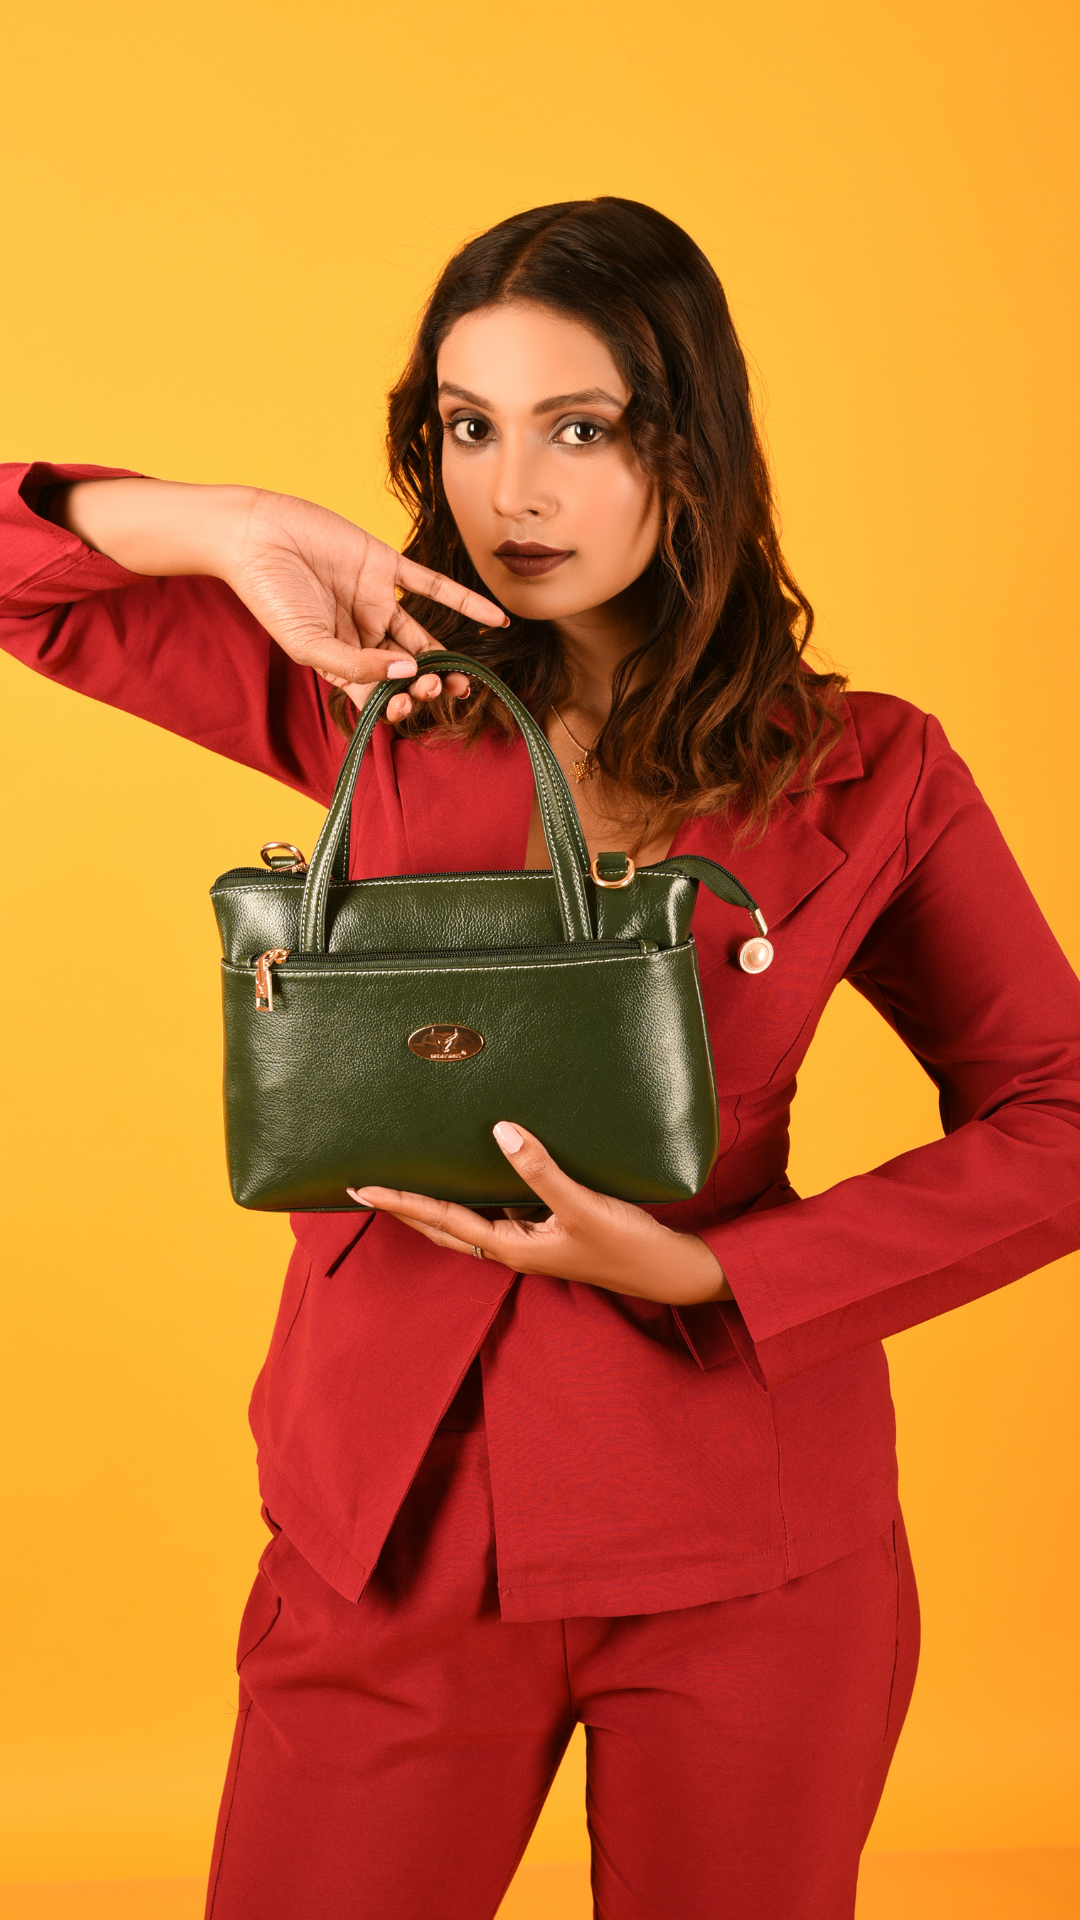 Redhorns Ladies Handbags#color_green